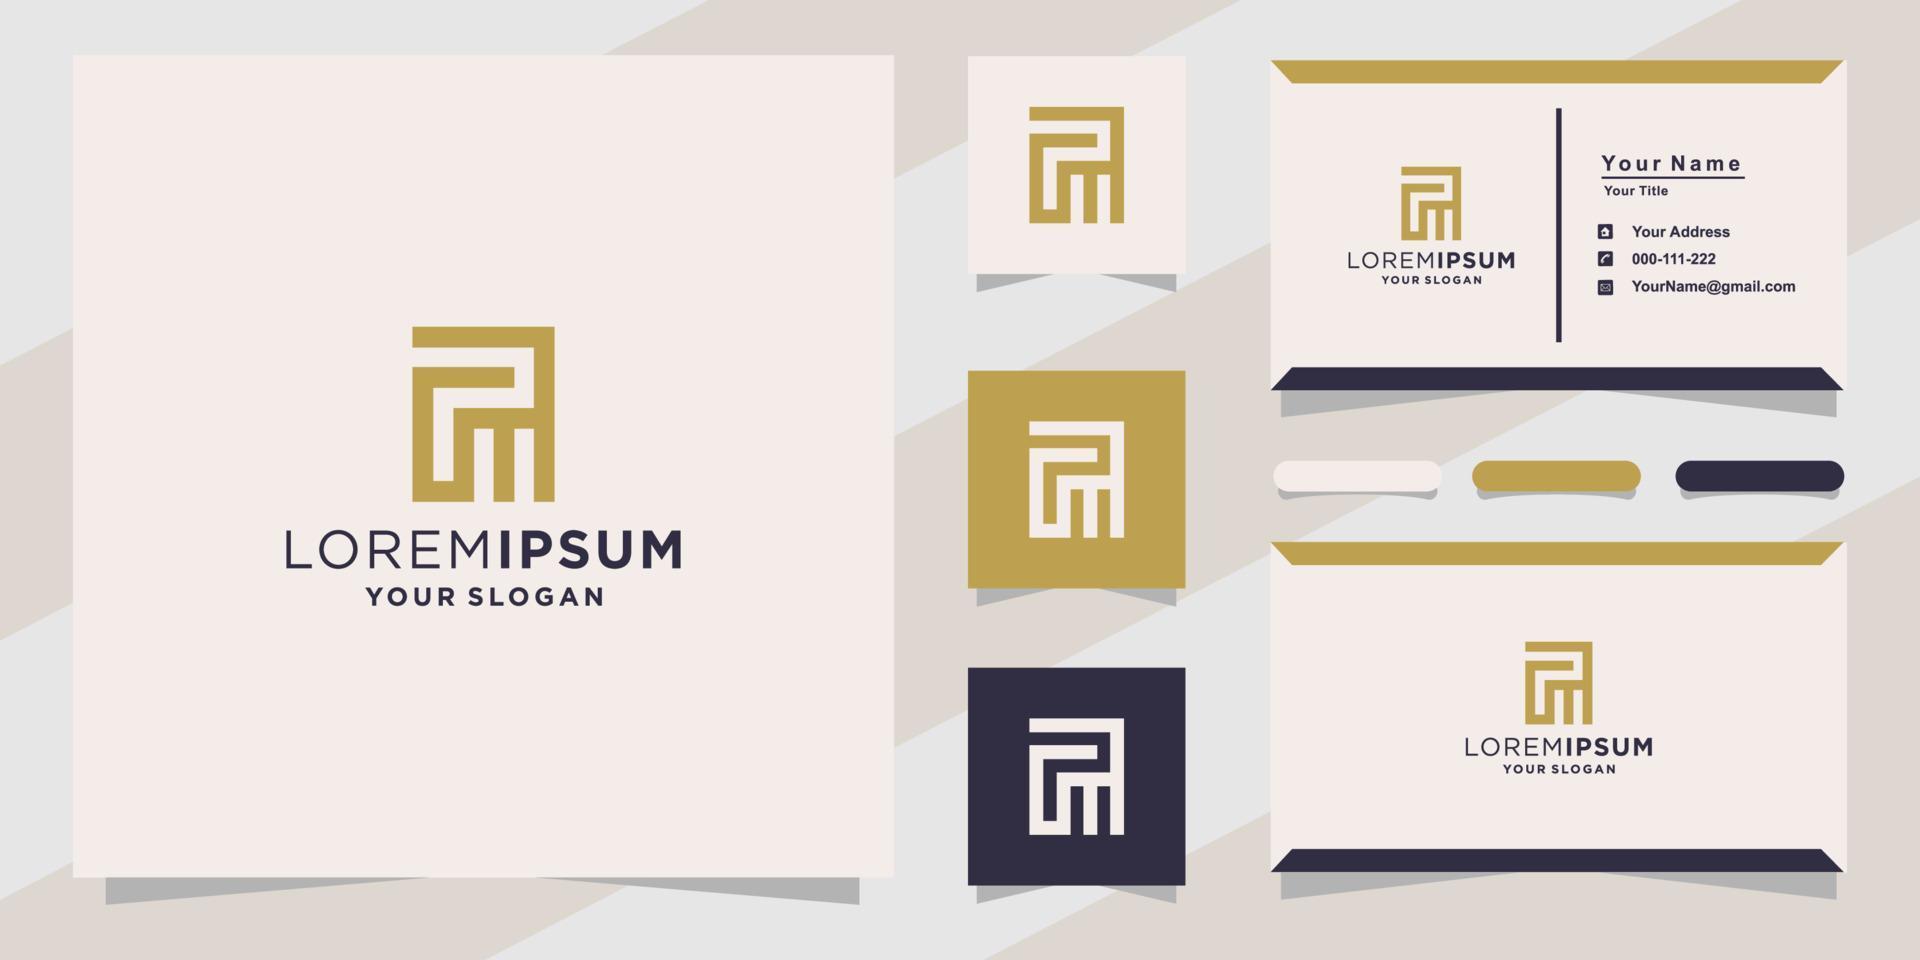 brief pm mp-logo voor bedrijf met sjabloon voor visitekaartjes vector